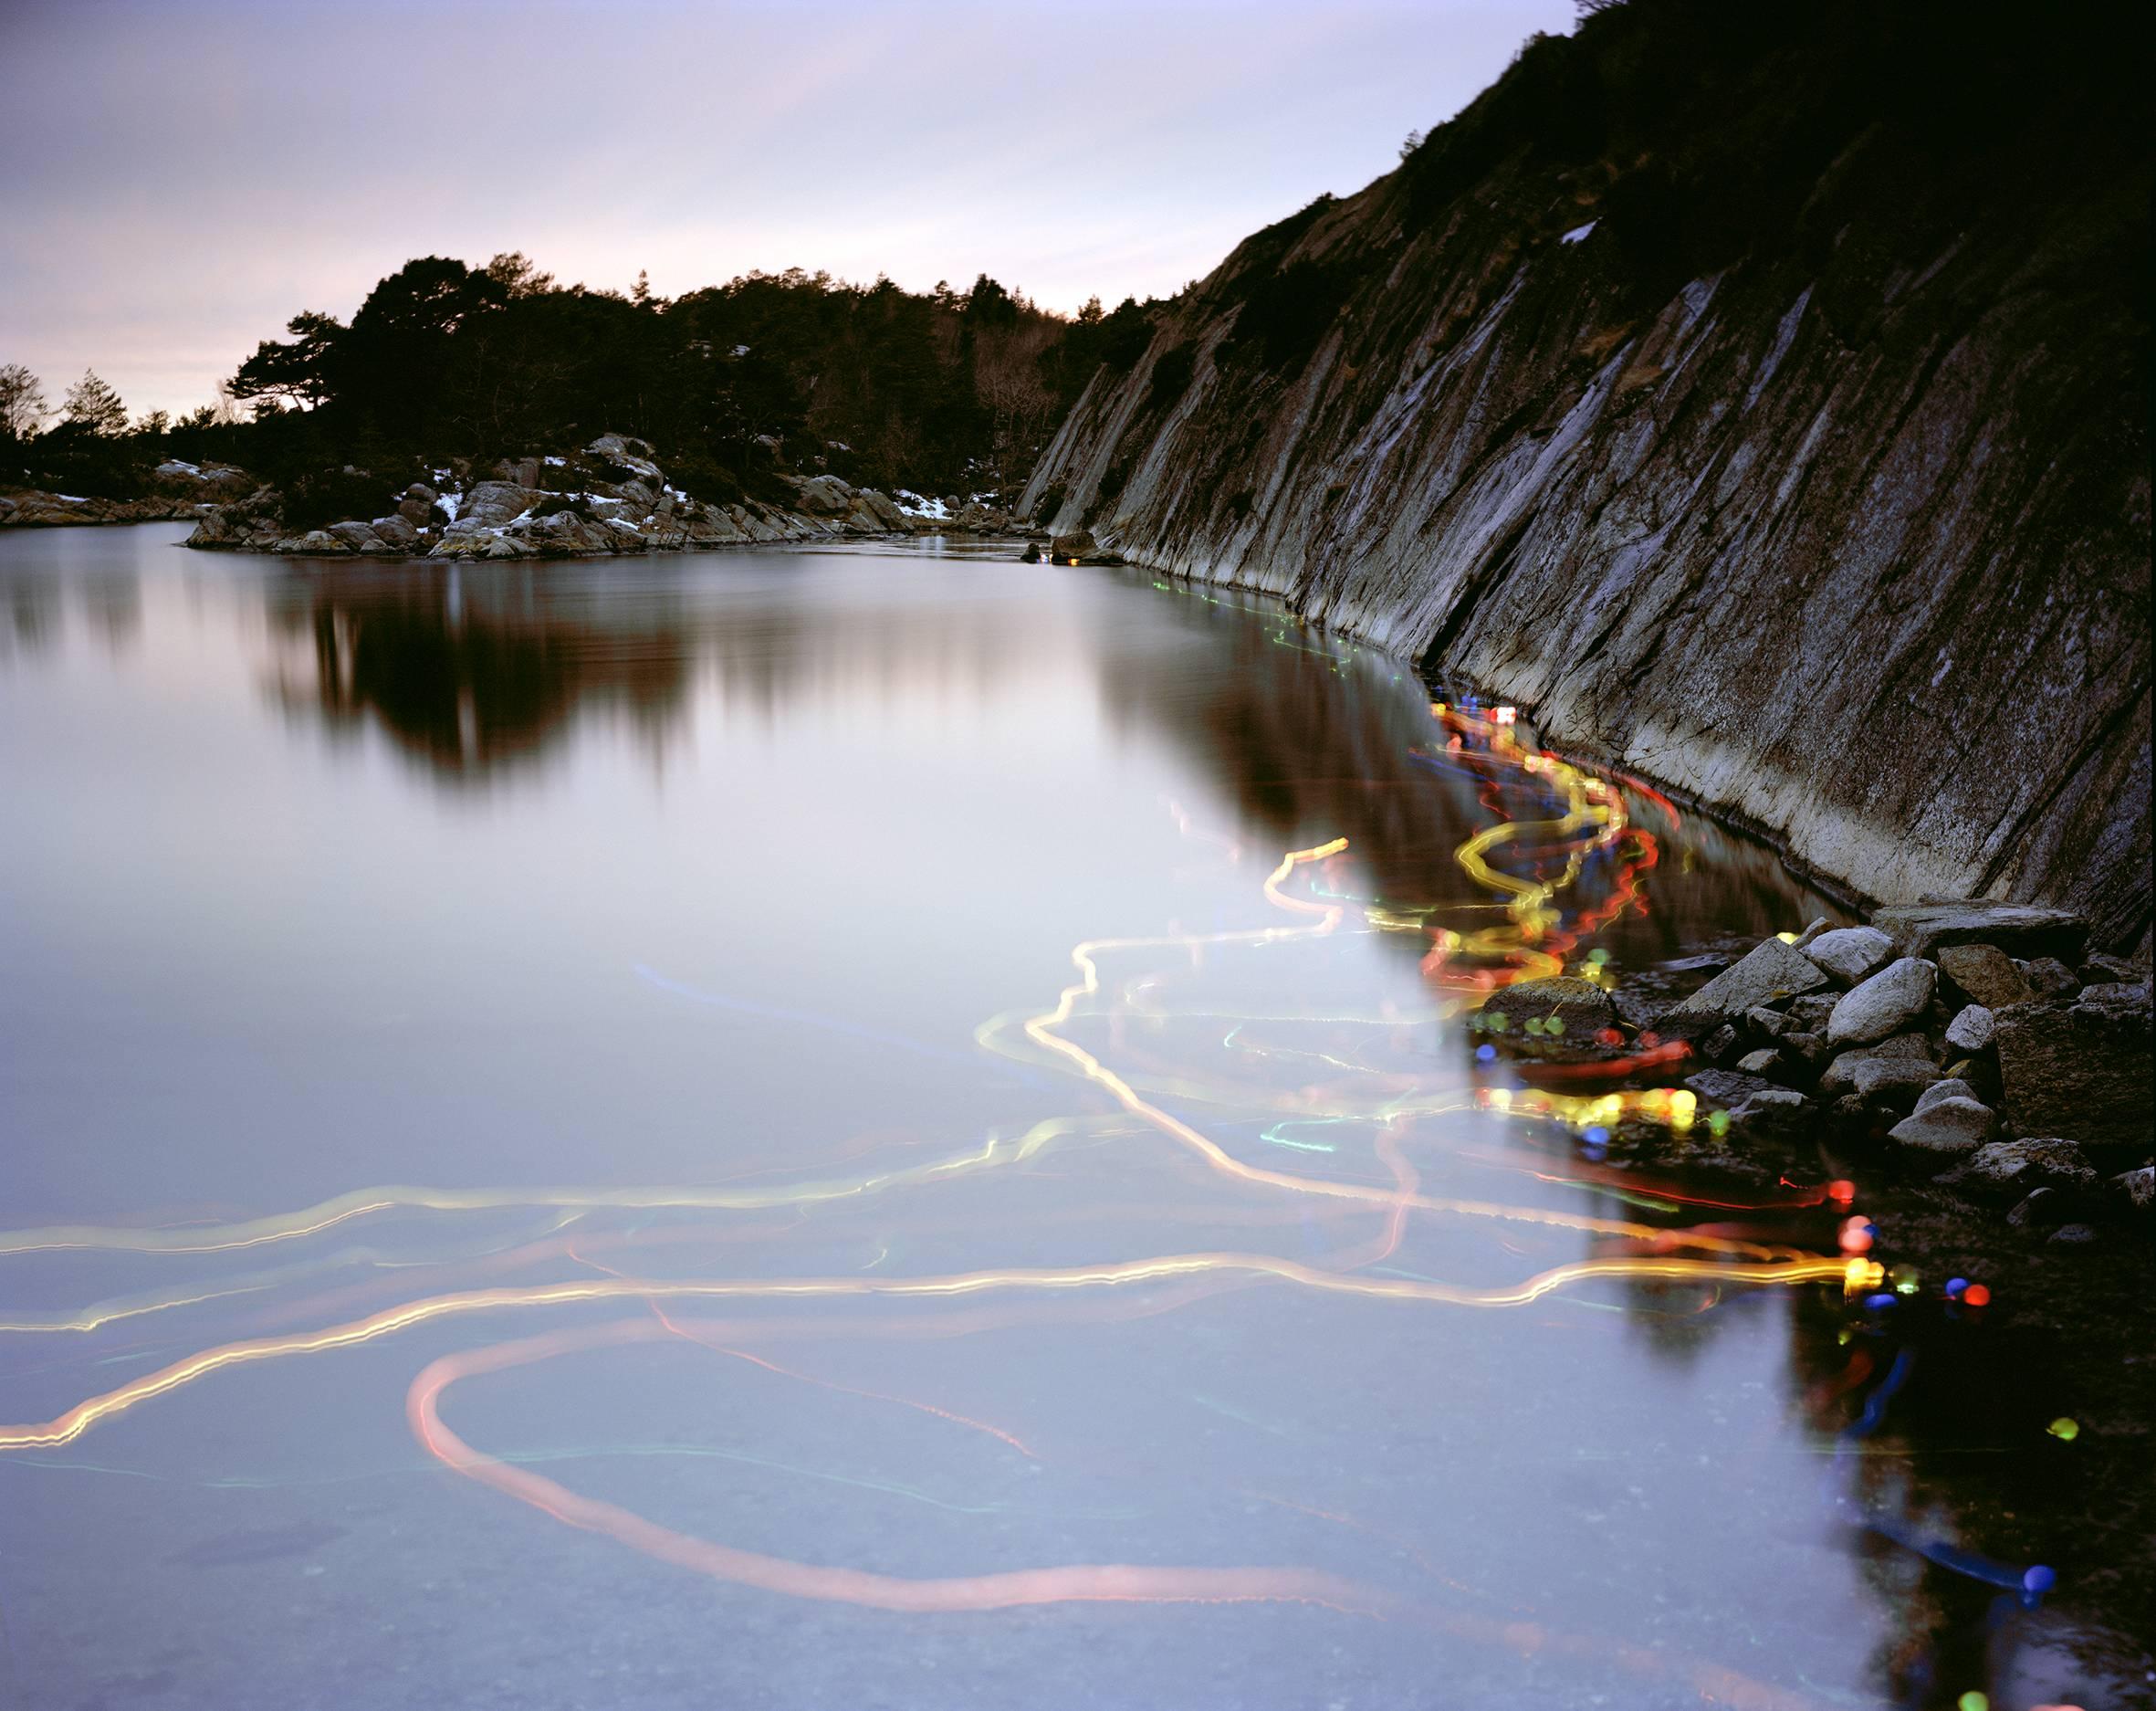  #05 - Skandinavisches, wasserdichtes Landschaftsfoto in Farbe